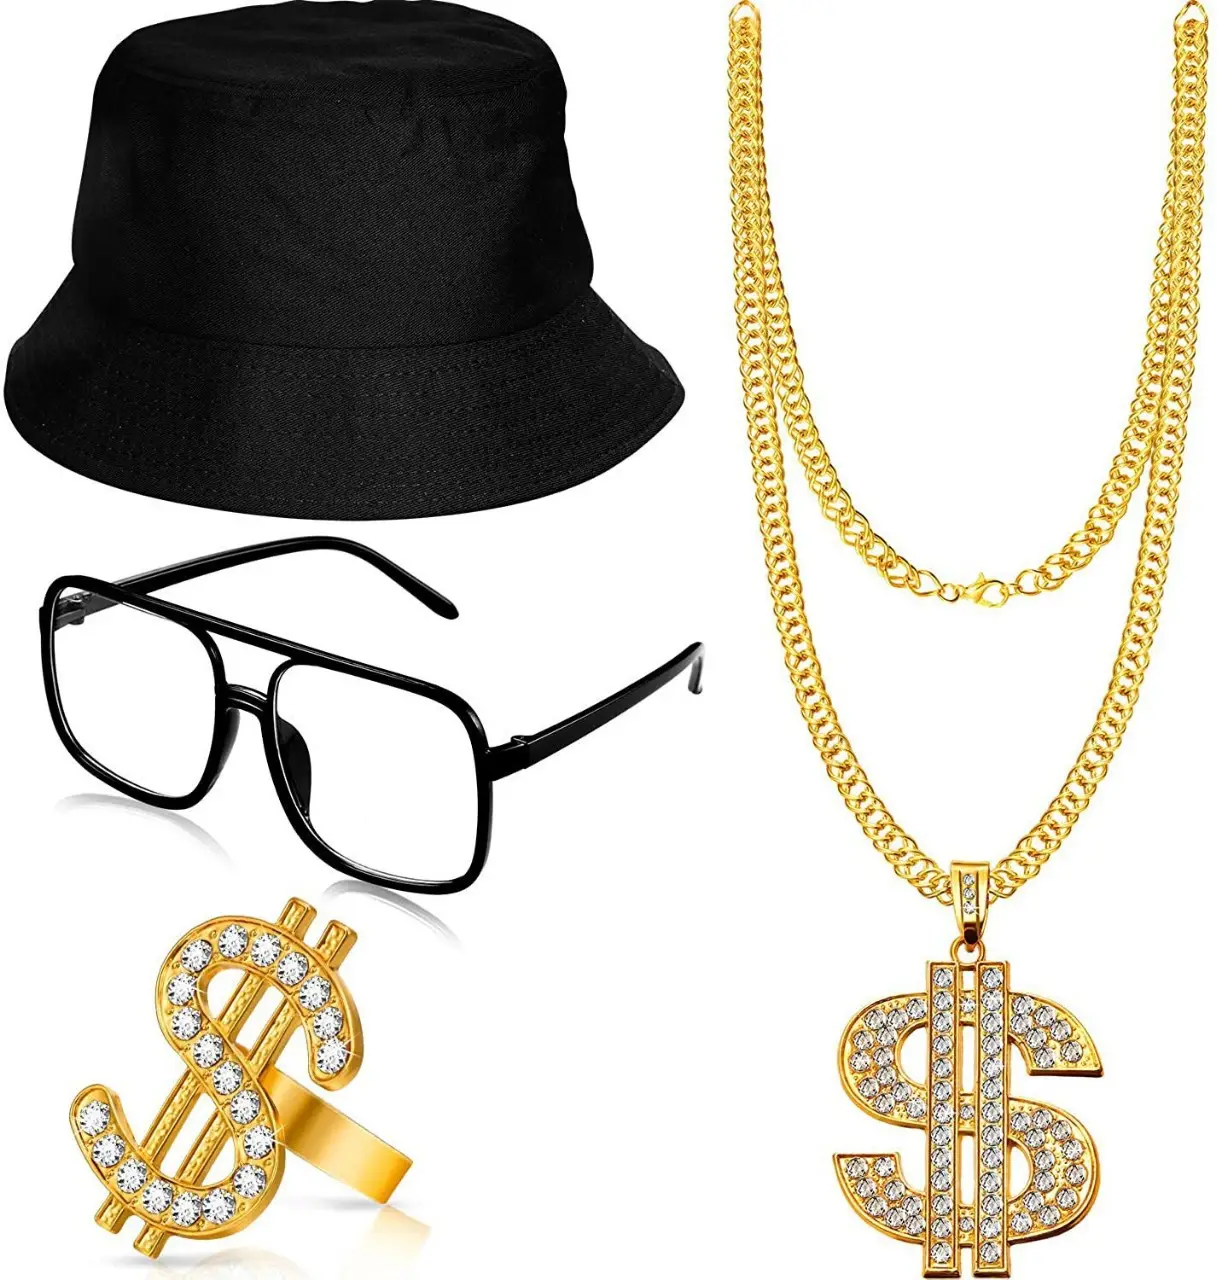 Hip Hop kostüm kiti kova şapka güneş gözlüğü altın zincir yüzük 80s/90s rapçi aksesuarları